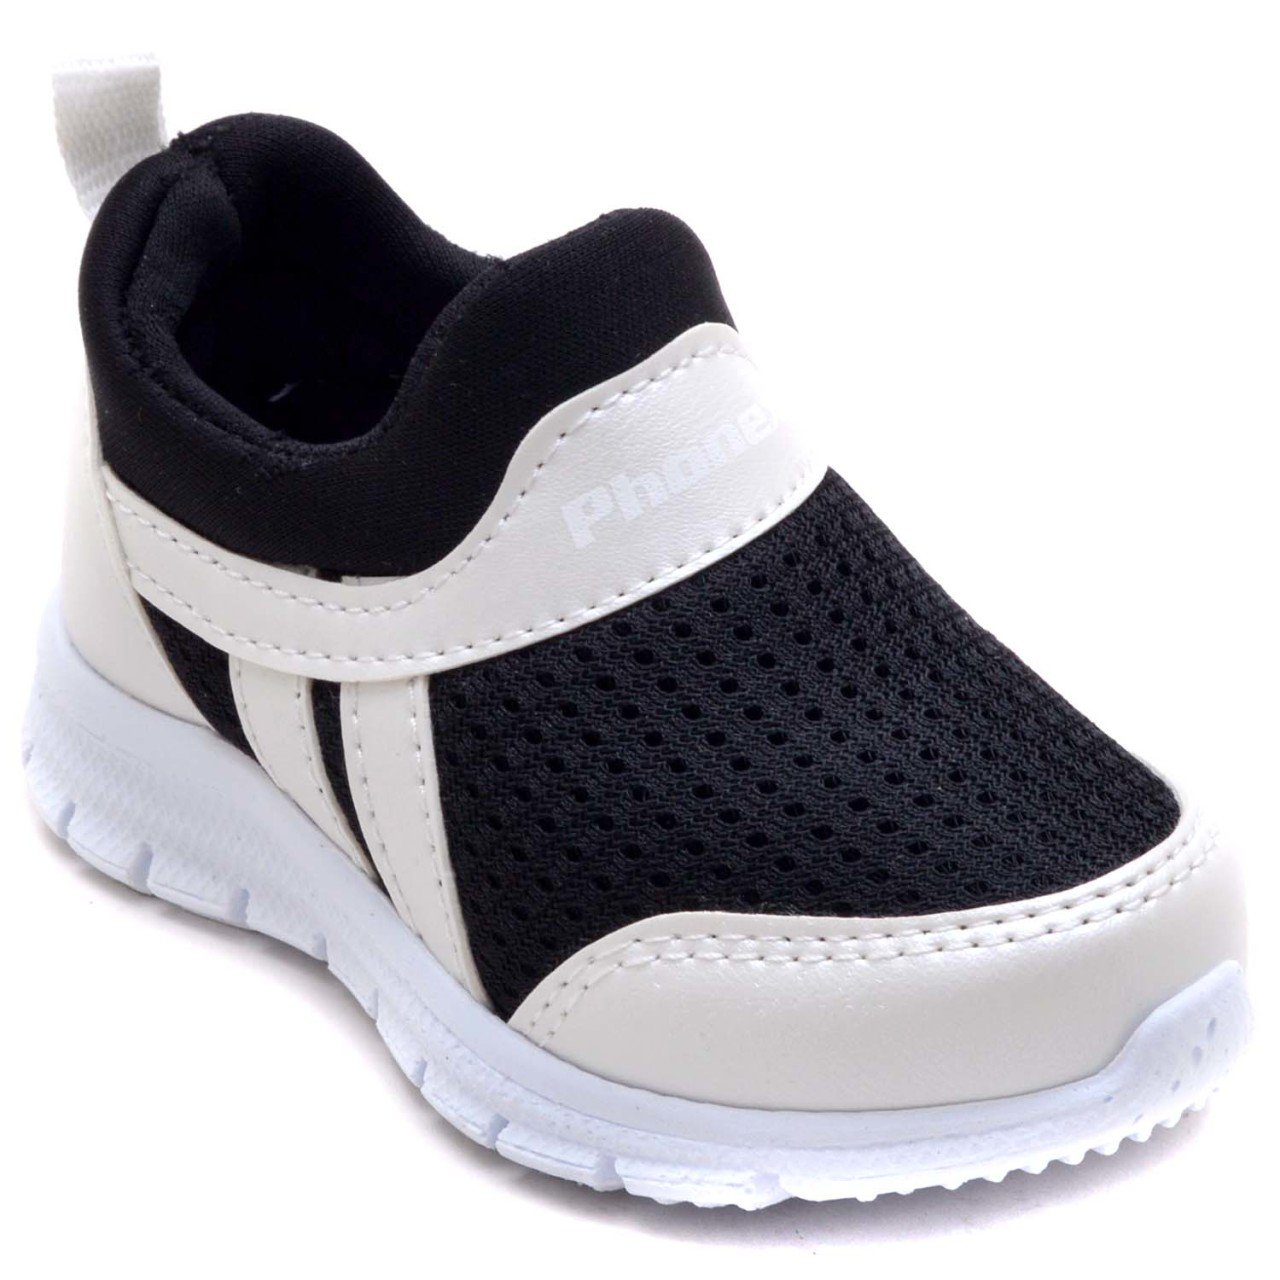 PHNX-11 Bebe Spor Ayakkabı - Beyaz